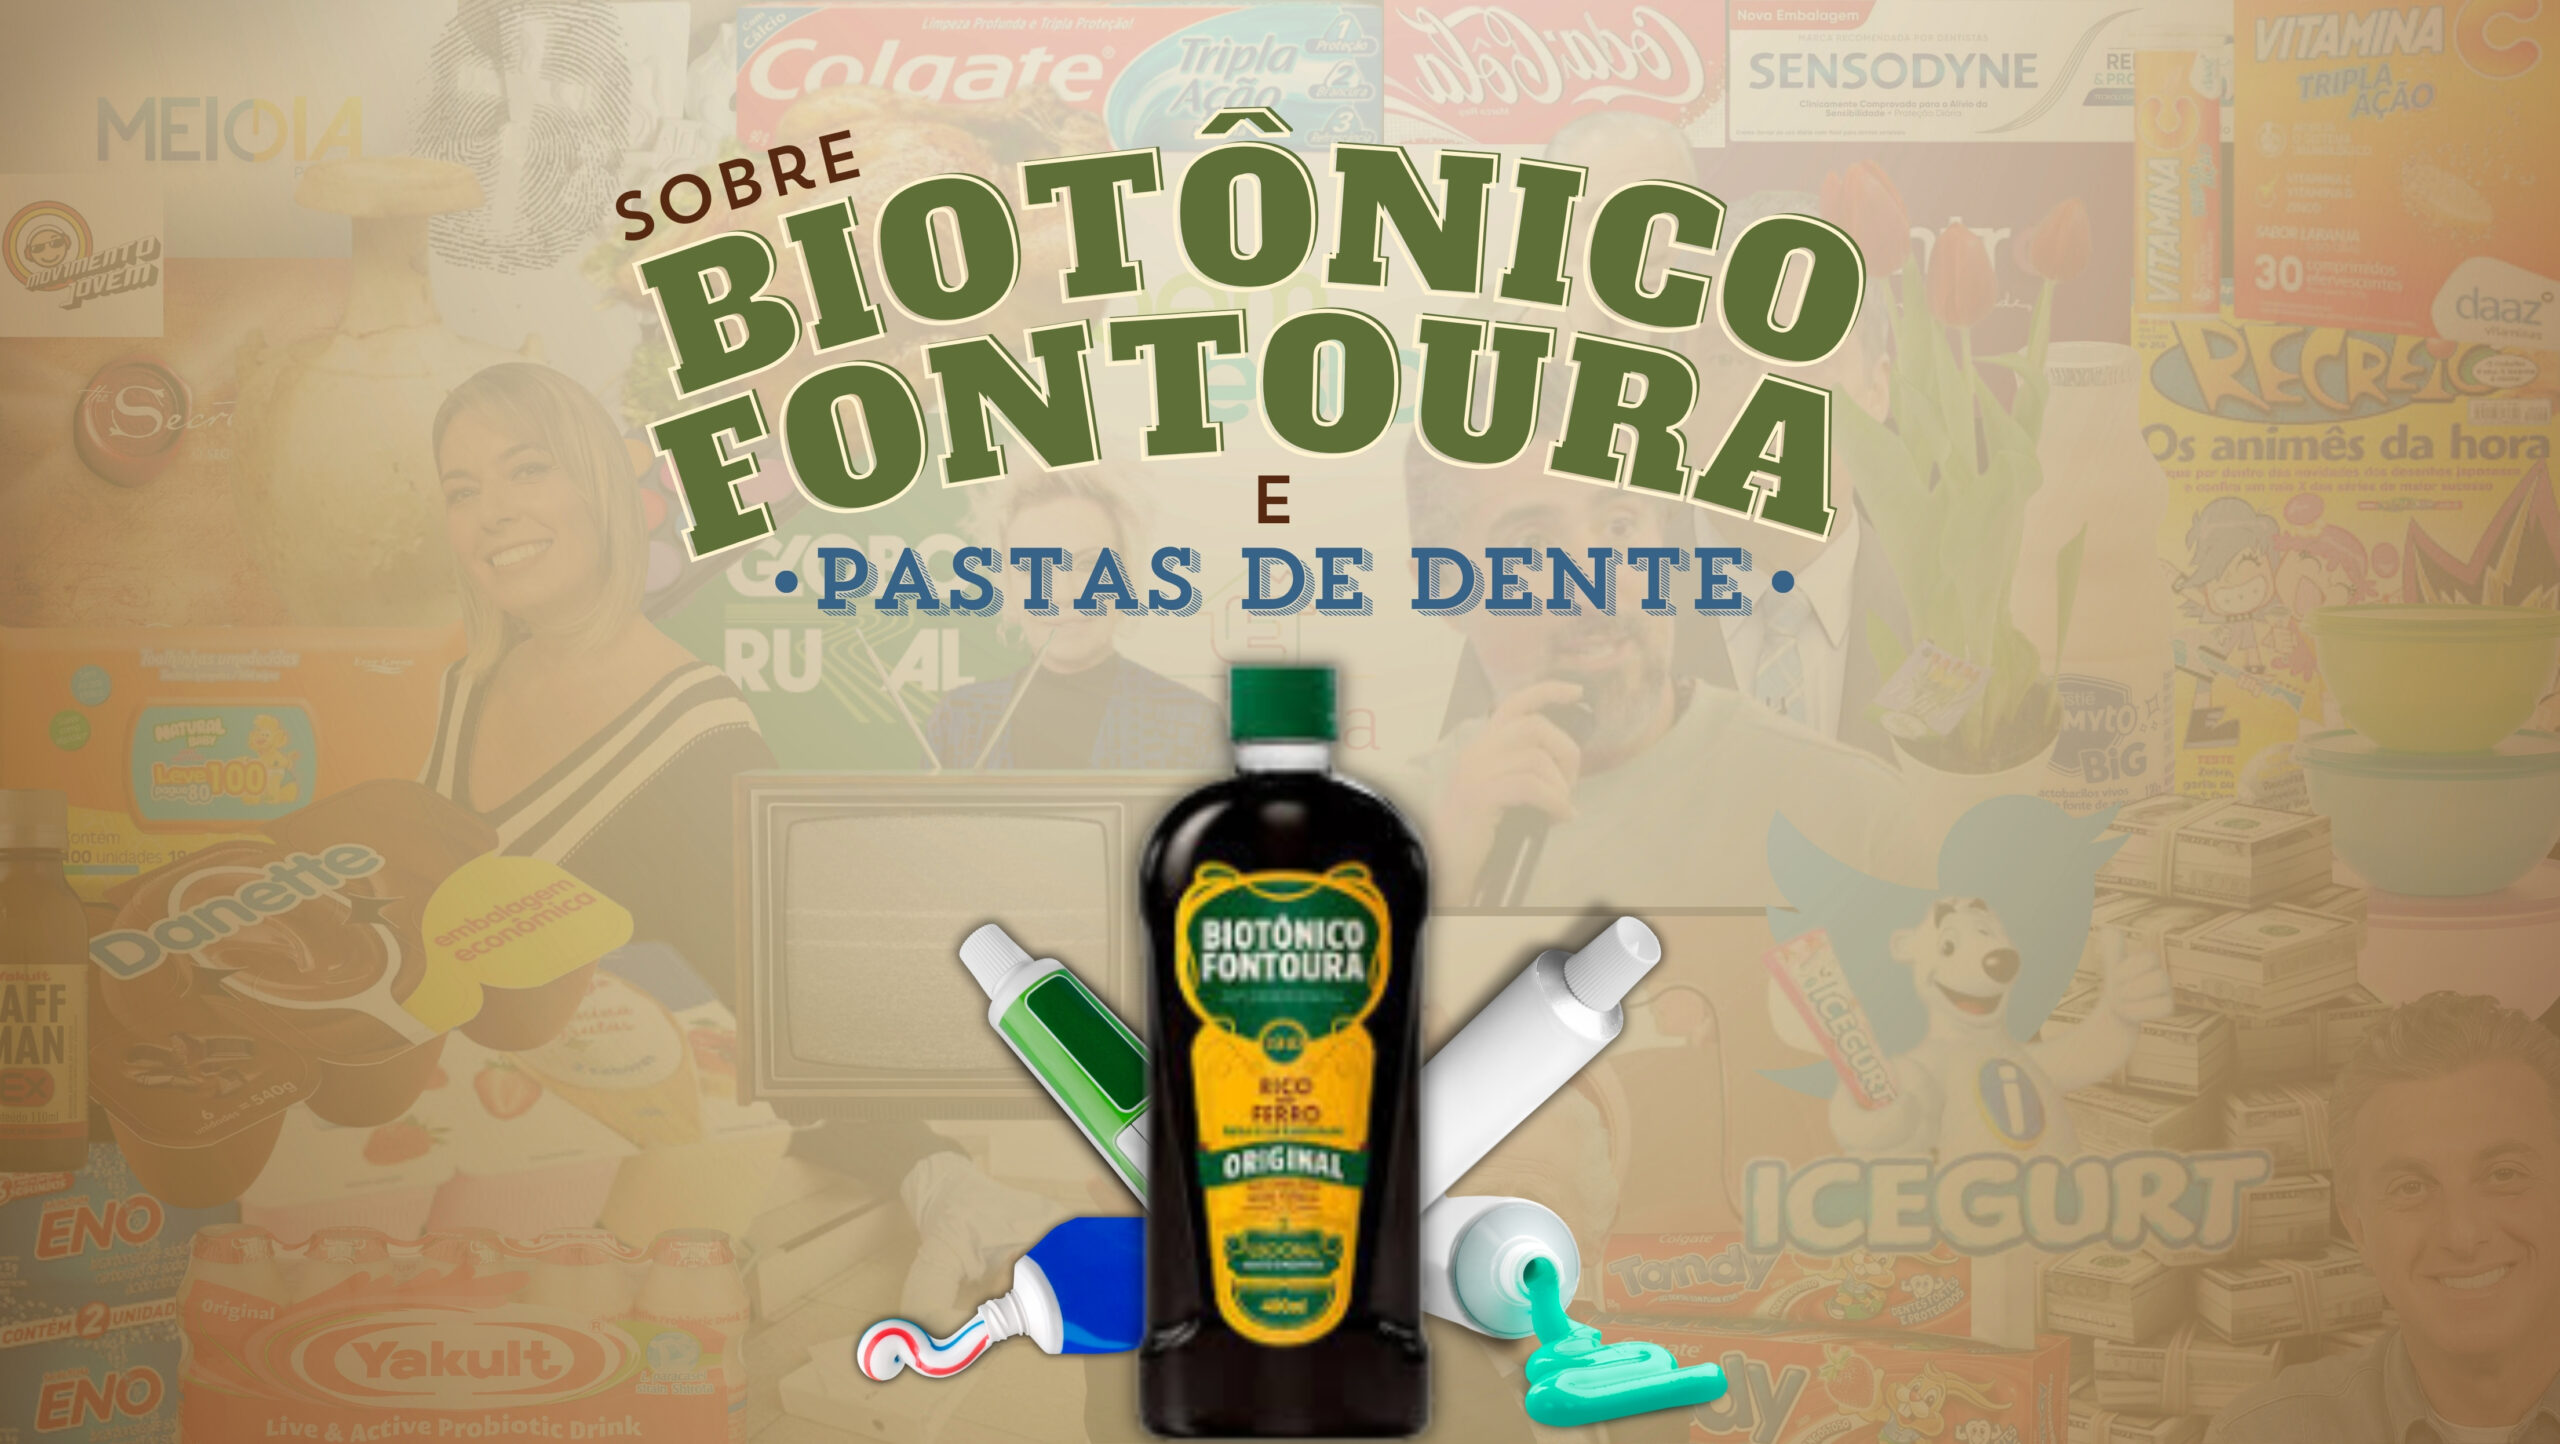 Fundo marron. Na frente, um frasco de Biotônico Fontoura e embalagens de pastas de dentes. Letreiro "Sobre Biotônico Fontoura e pastas de dente" nas cores verde e azul.